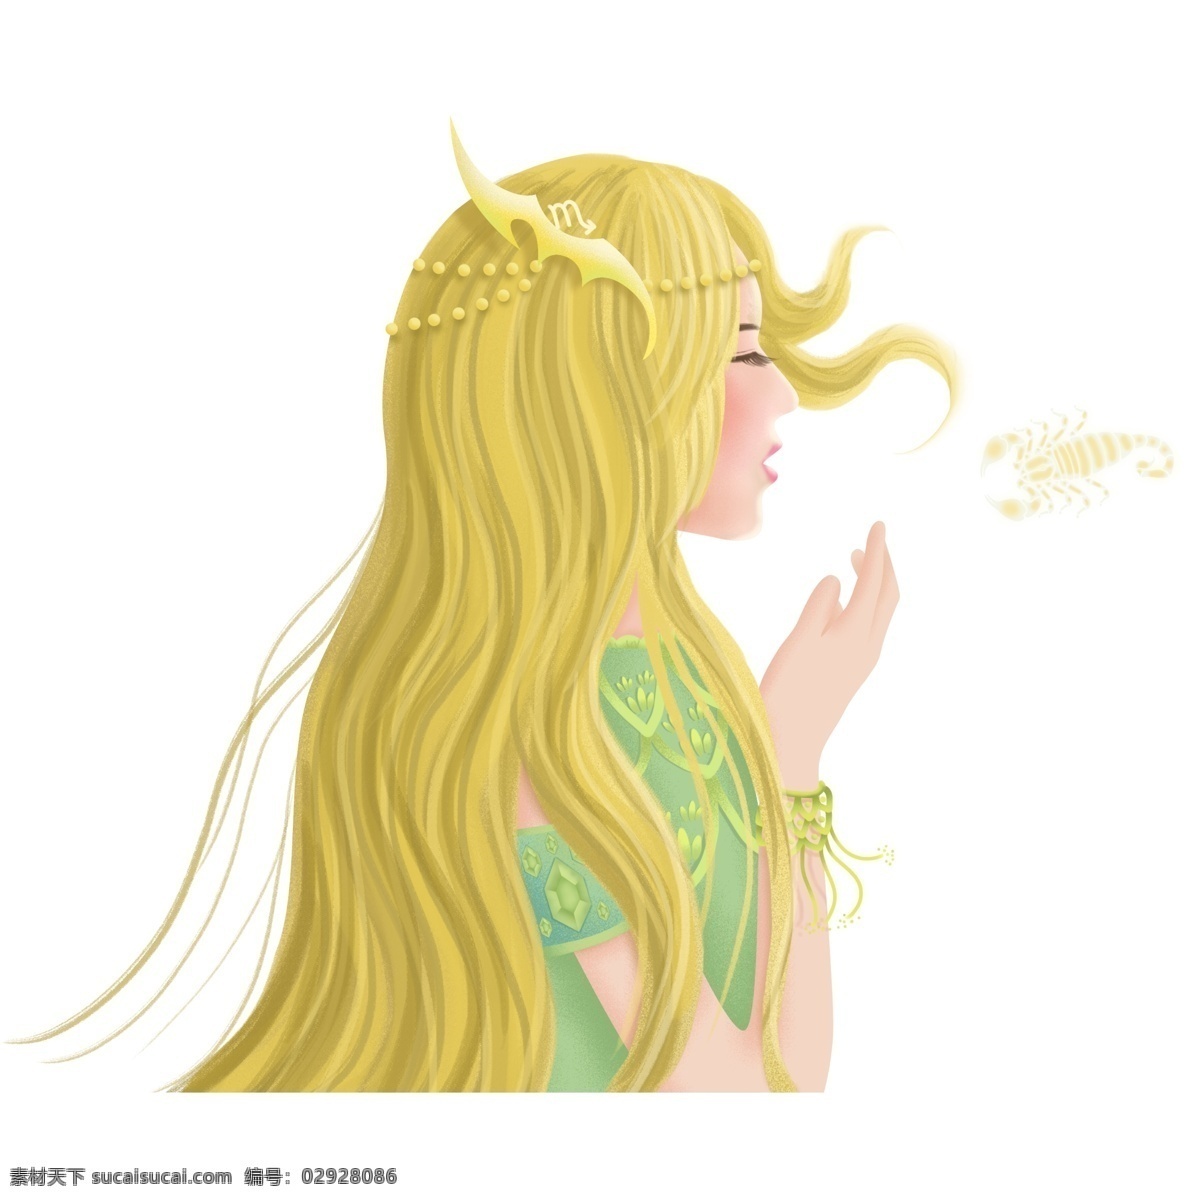 梦幻 唯美 天蝎座 女生 金发 女孩 少女 侧面 手绘 半身图 人物设计